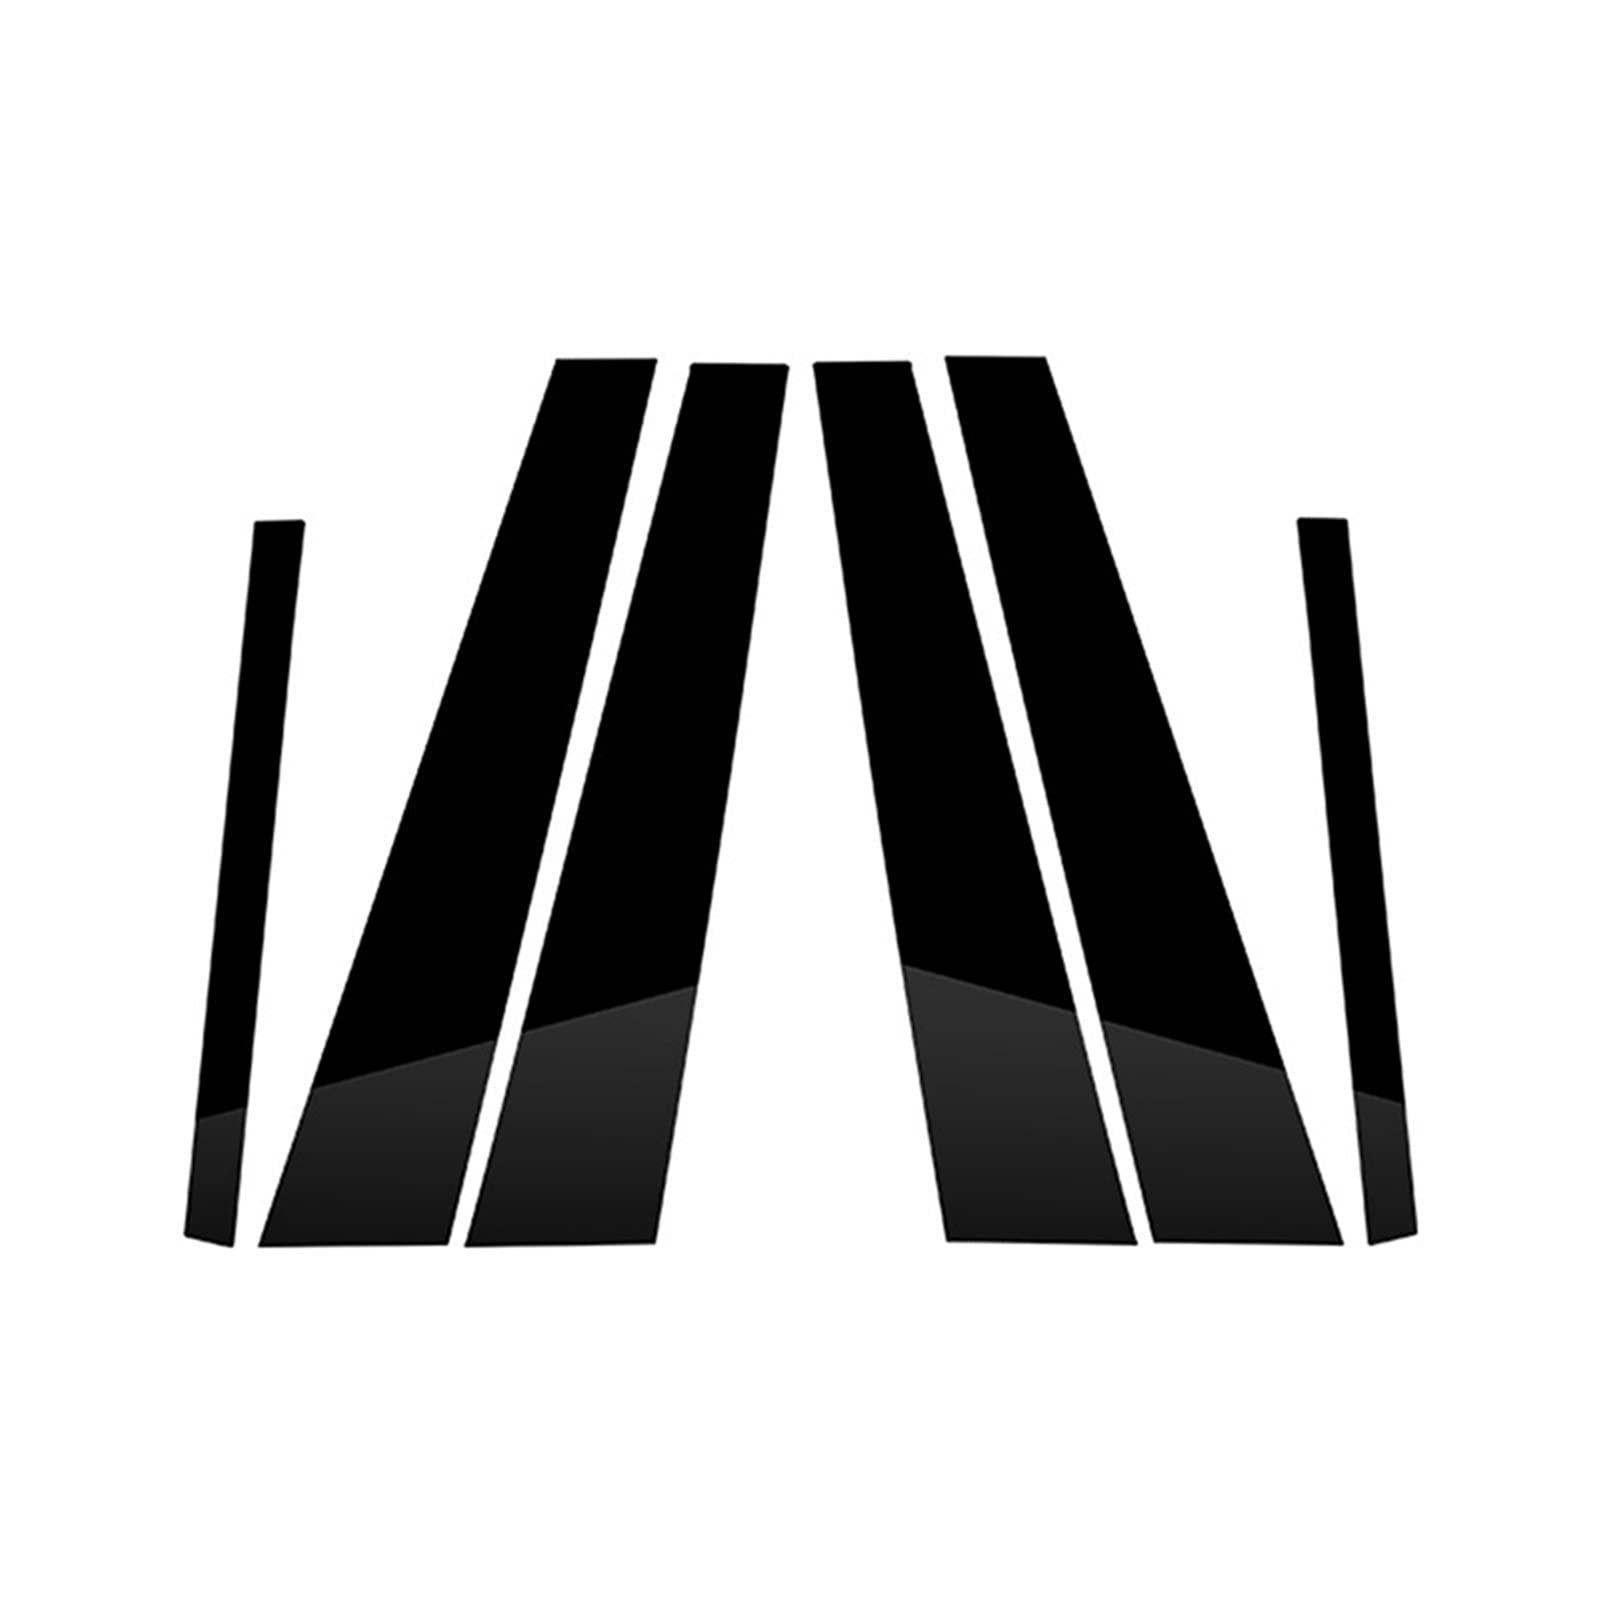 Glänzend schwarze Autofenster-Säulenpfosten-Türverkleidungs-Abdeckungsaufkleber, passend for BMW 7er F01 F02 2009 2010 2011 2012 2013 2014 2015 Aufkleberabdeckung für die B-Säule von ARRPO